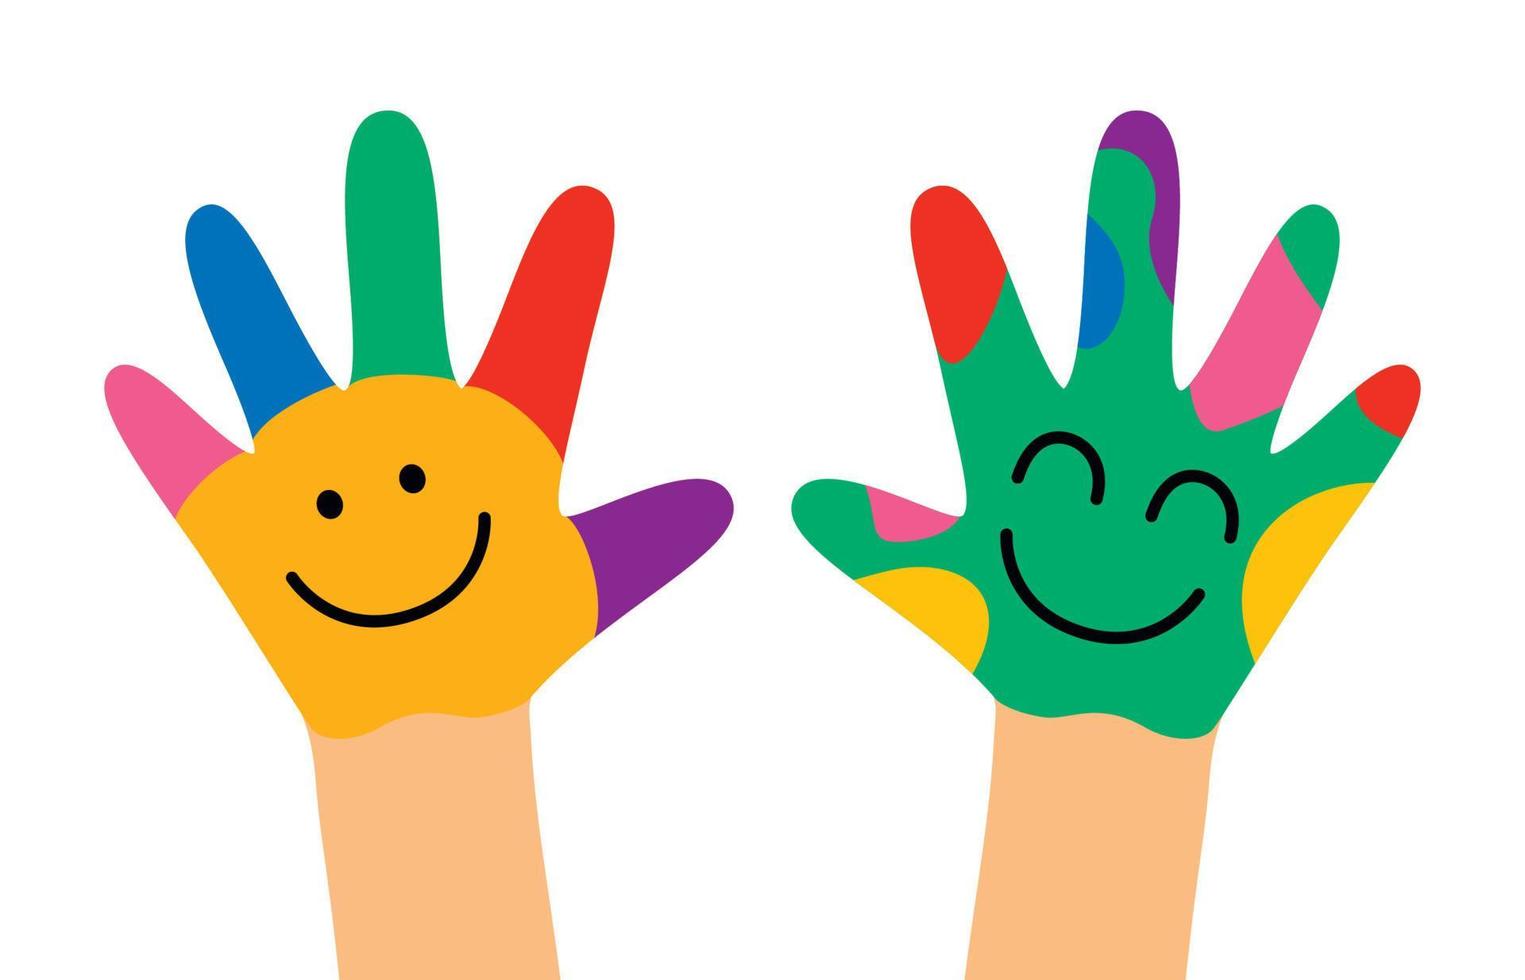 mains peintes colorées de petits enfants vecteur